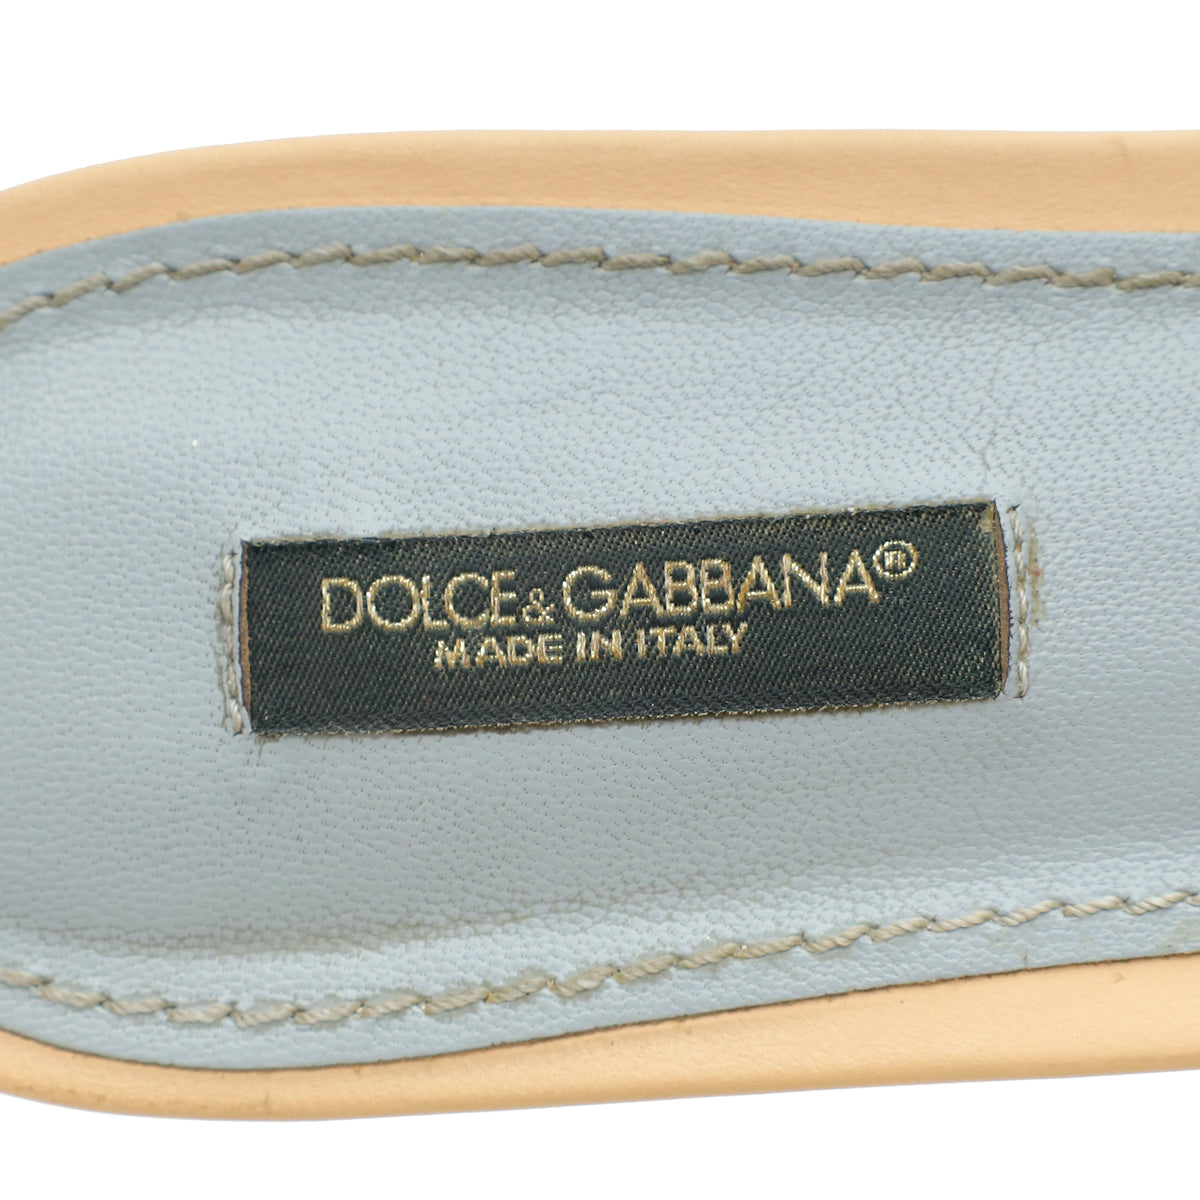 Dolce & Gabbana Nude Bianca Slides w/DG Millennials Cut Out Logo 39.5